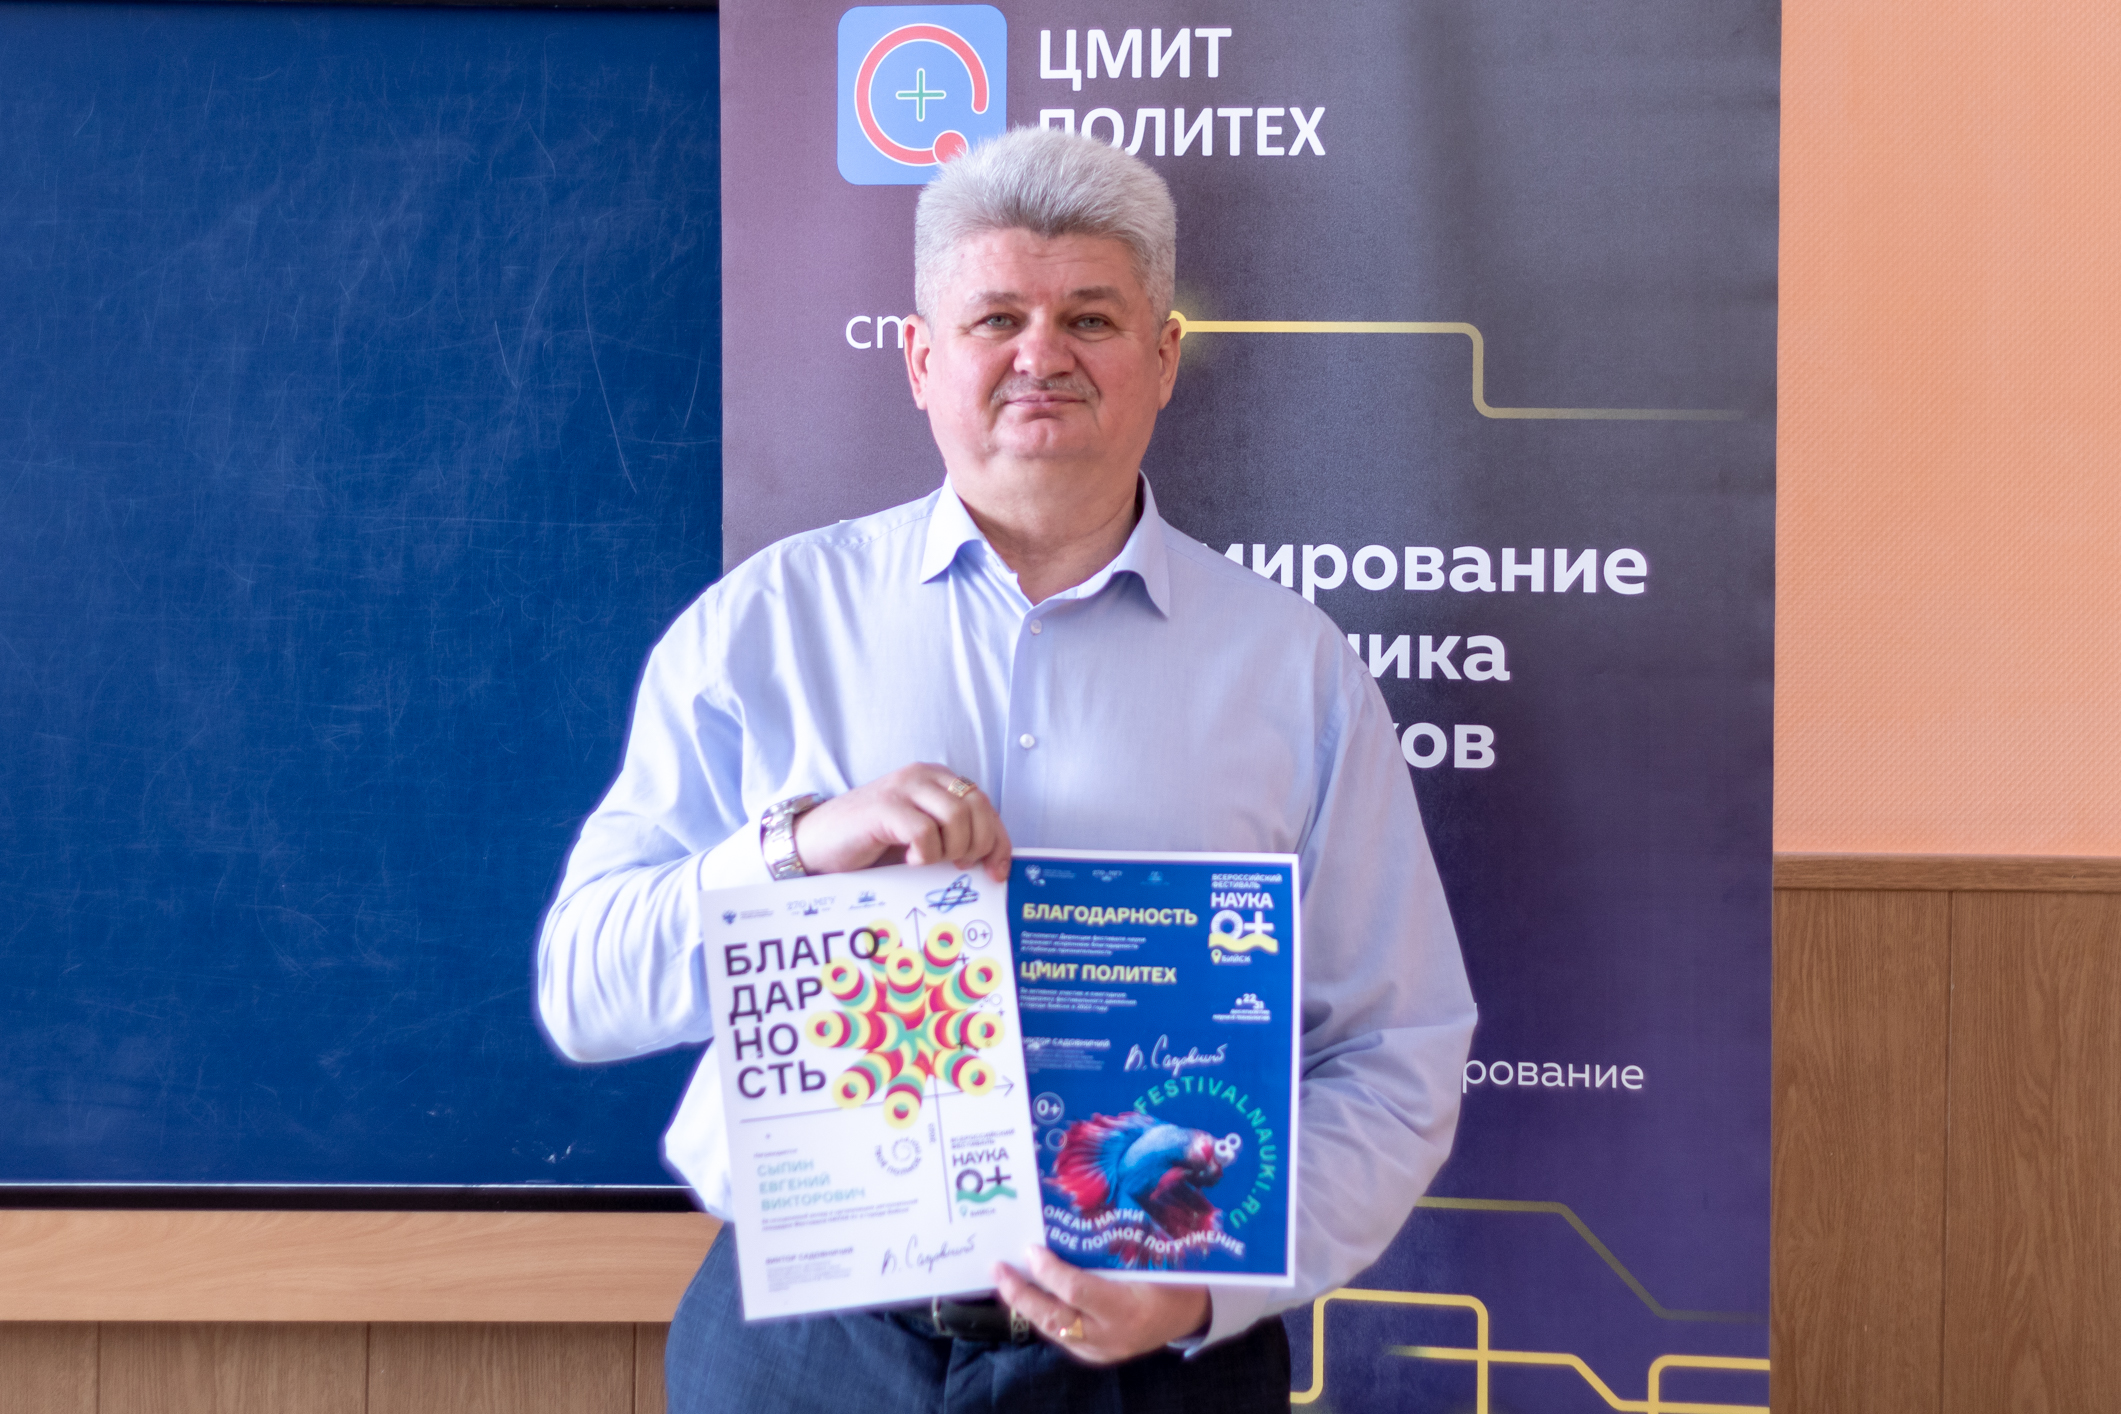 Команда ЦМИТ Политех получила Благодарственные письма от дирекции Всероссийского фестиваля Наука 0+!